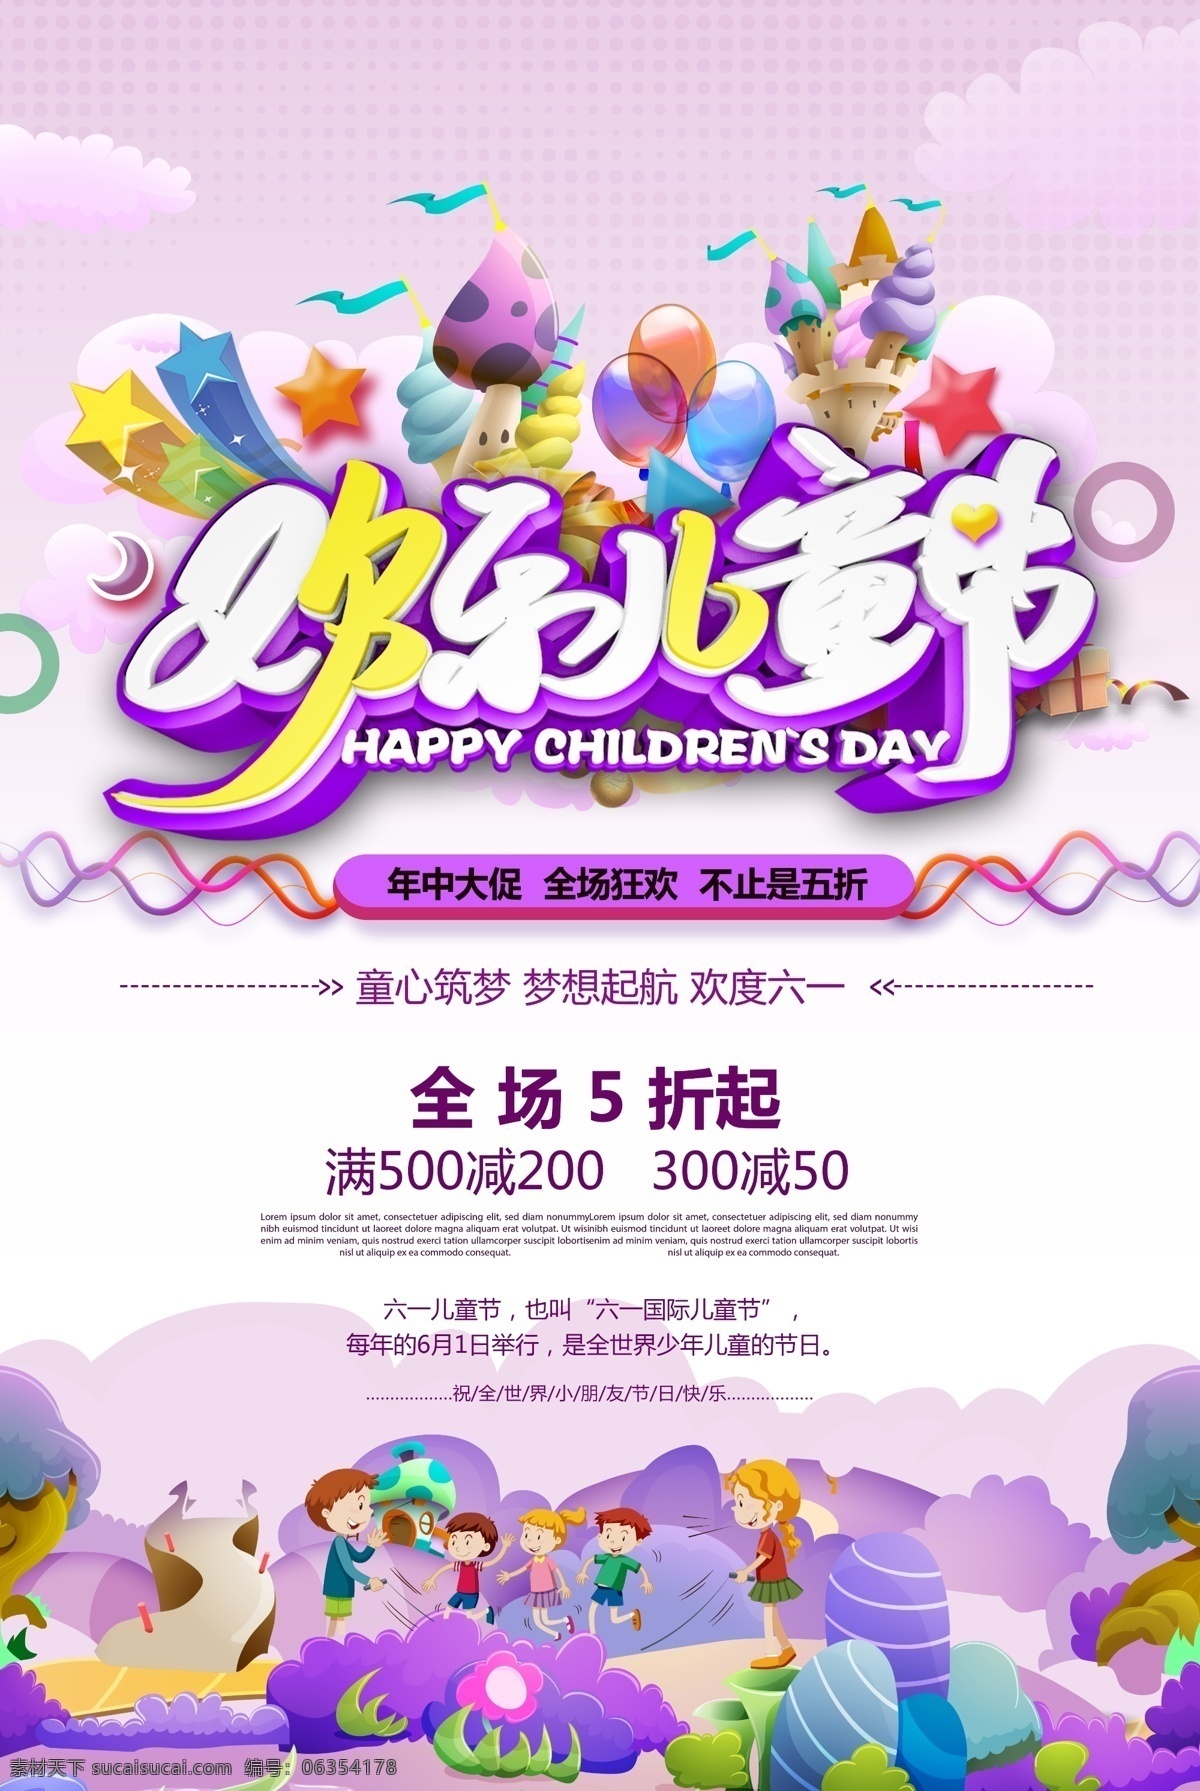 欢乐 儿童节 欢乐儿童节 六一 61 儿童节活动